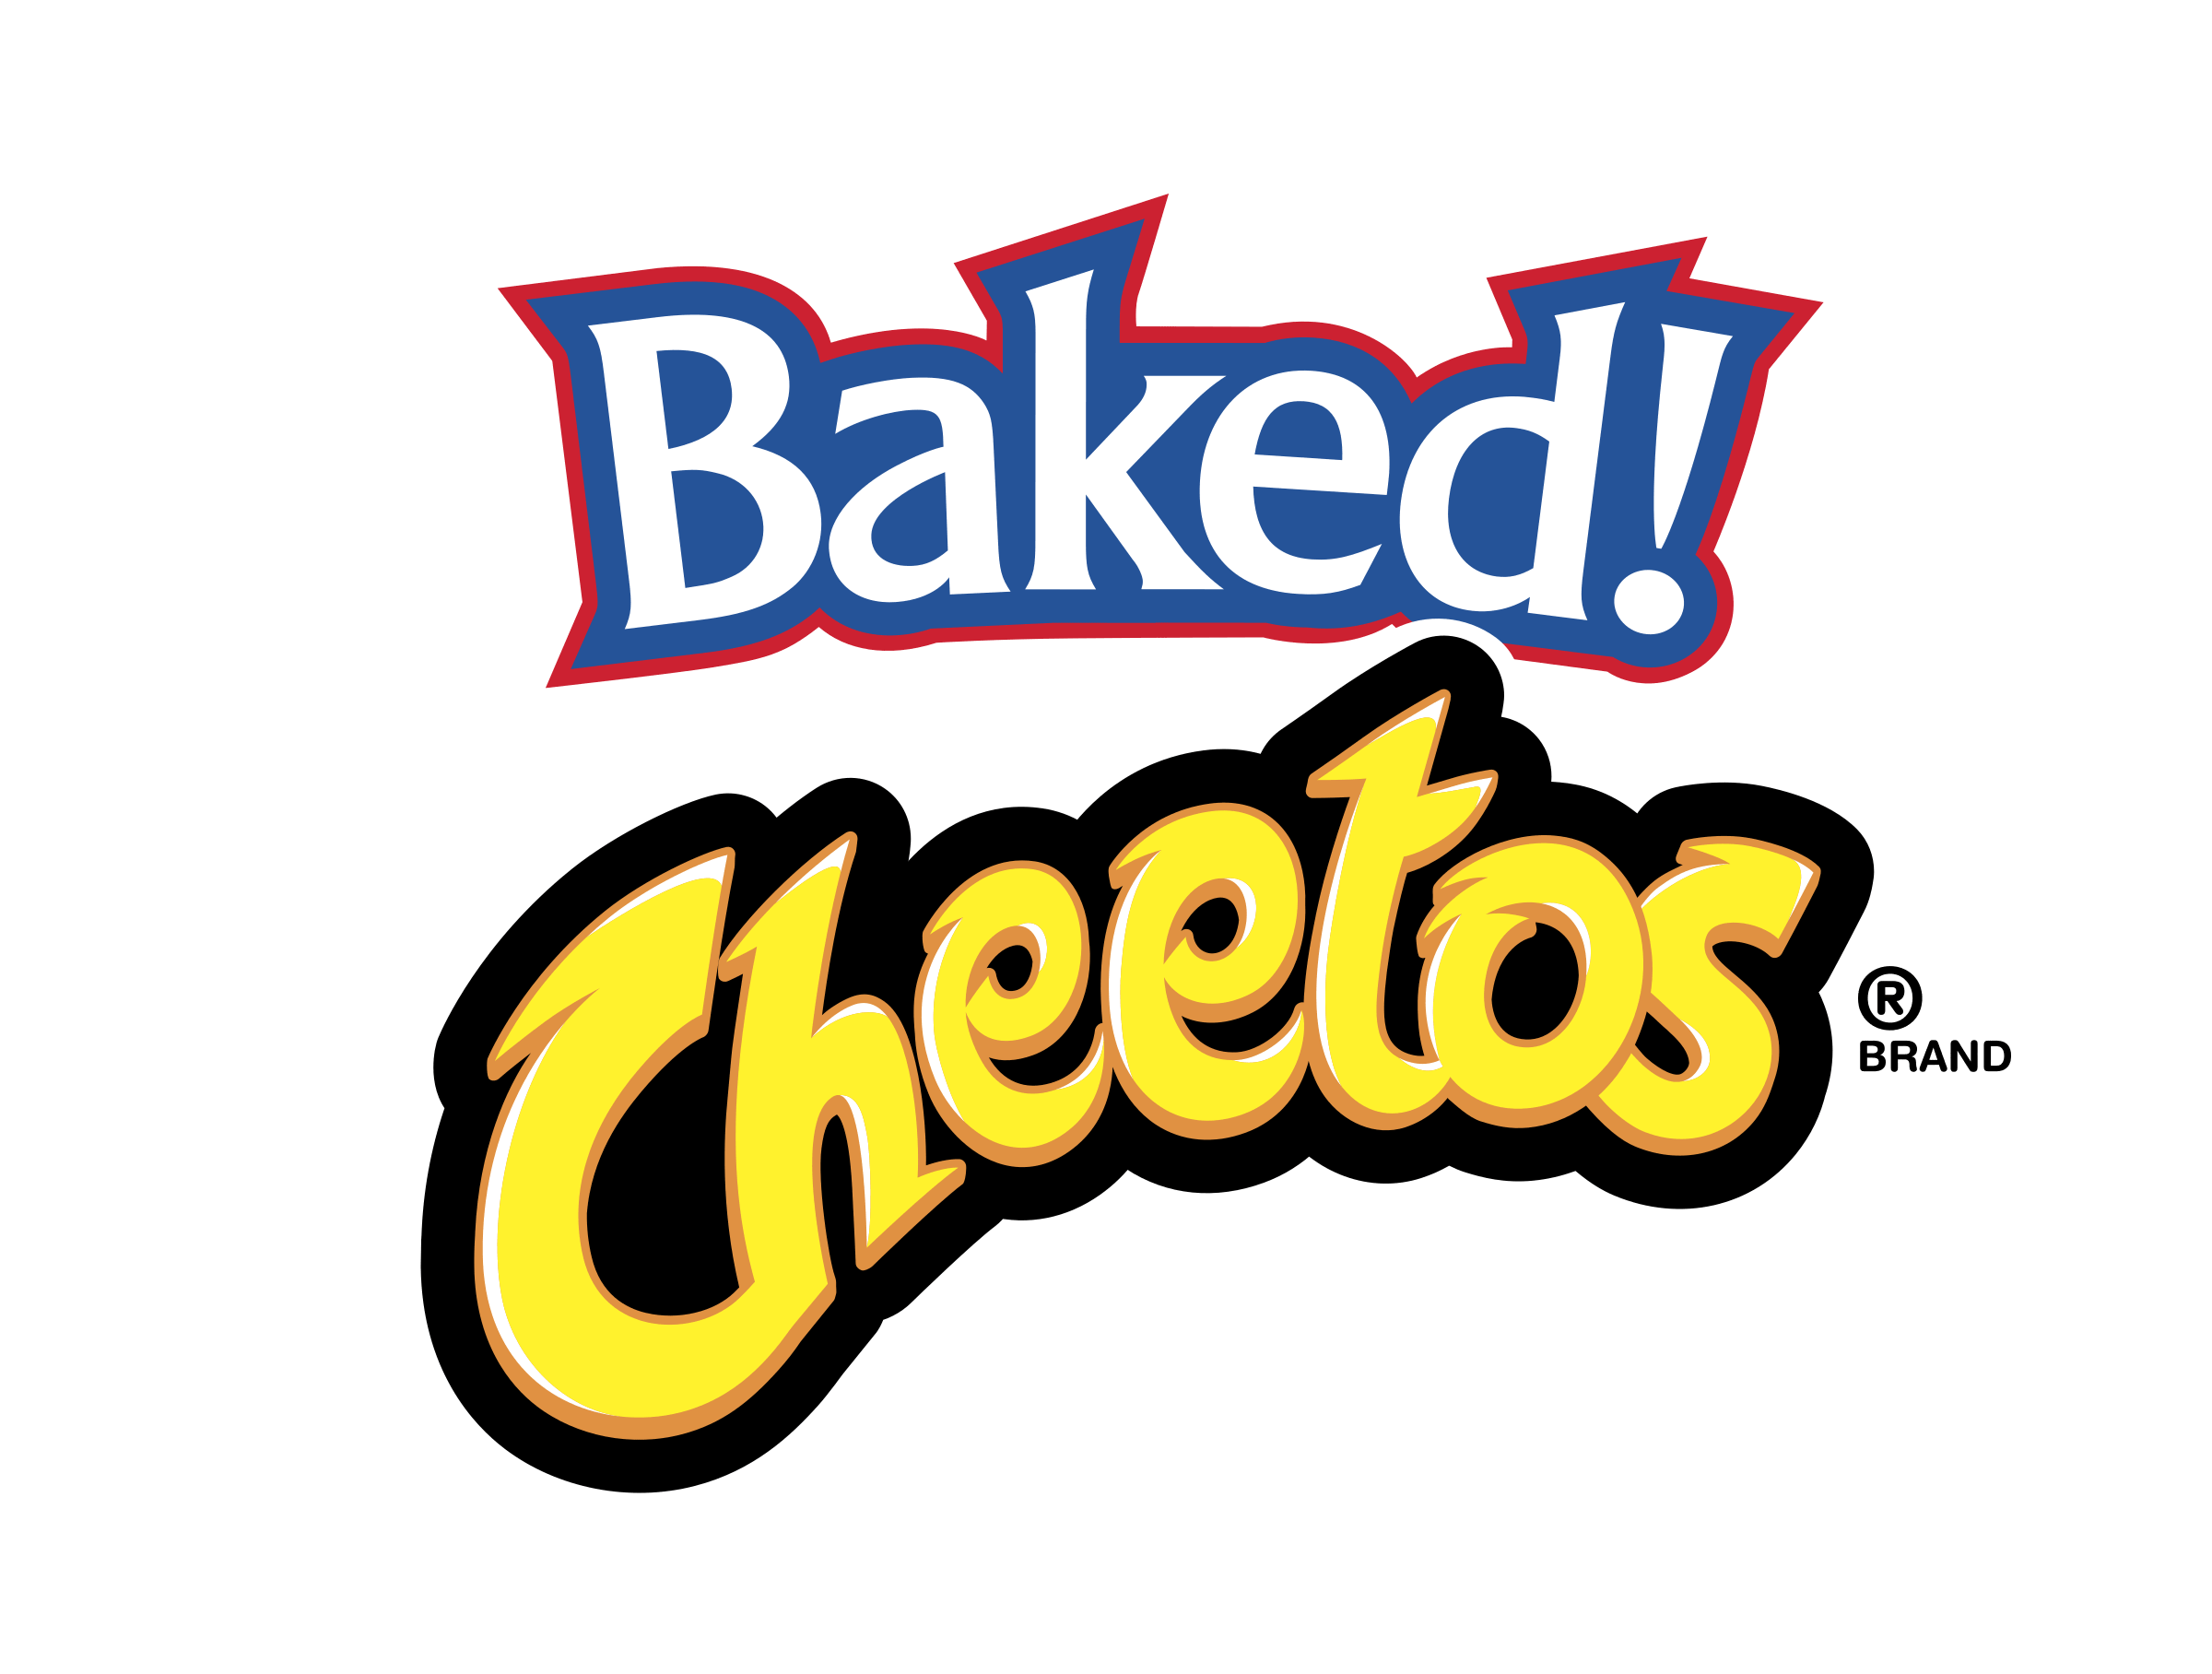 Chettos Logo - BAKED CHEETOS Logo PNG Transparent & SVG Vector